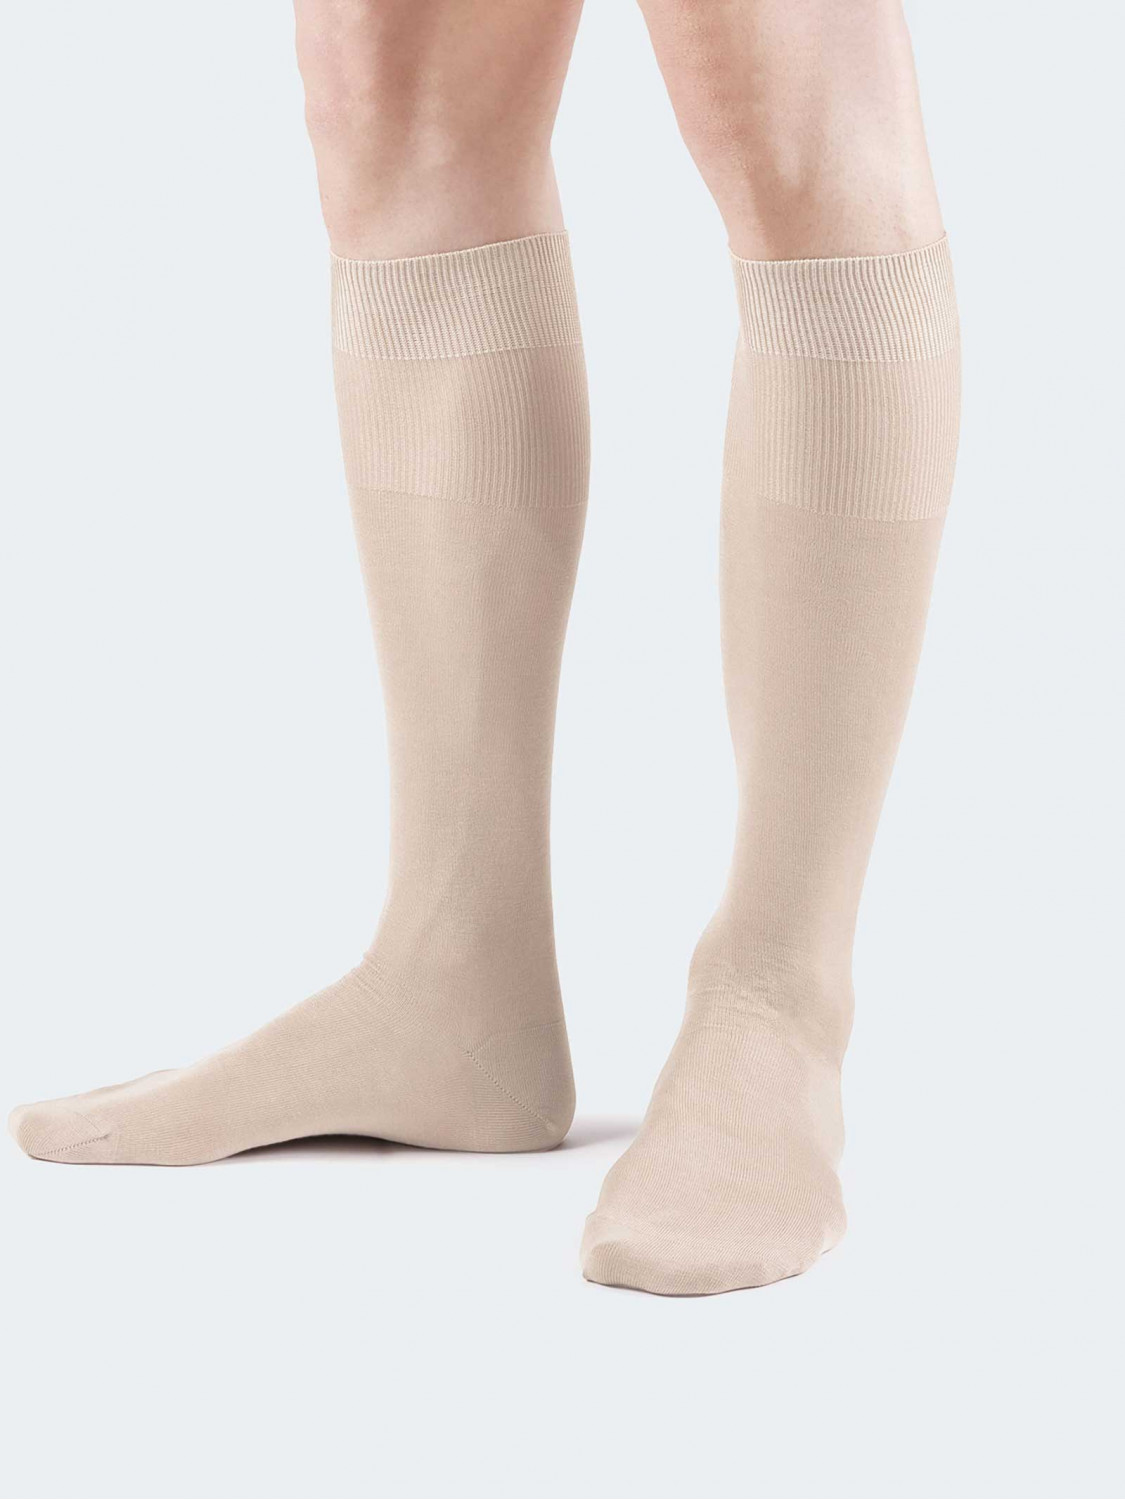 Einfarbige Socken aus 100% Baumwolle - Made in Italy